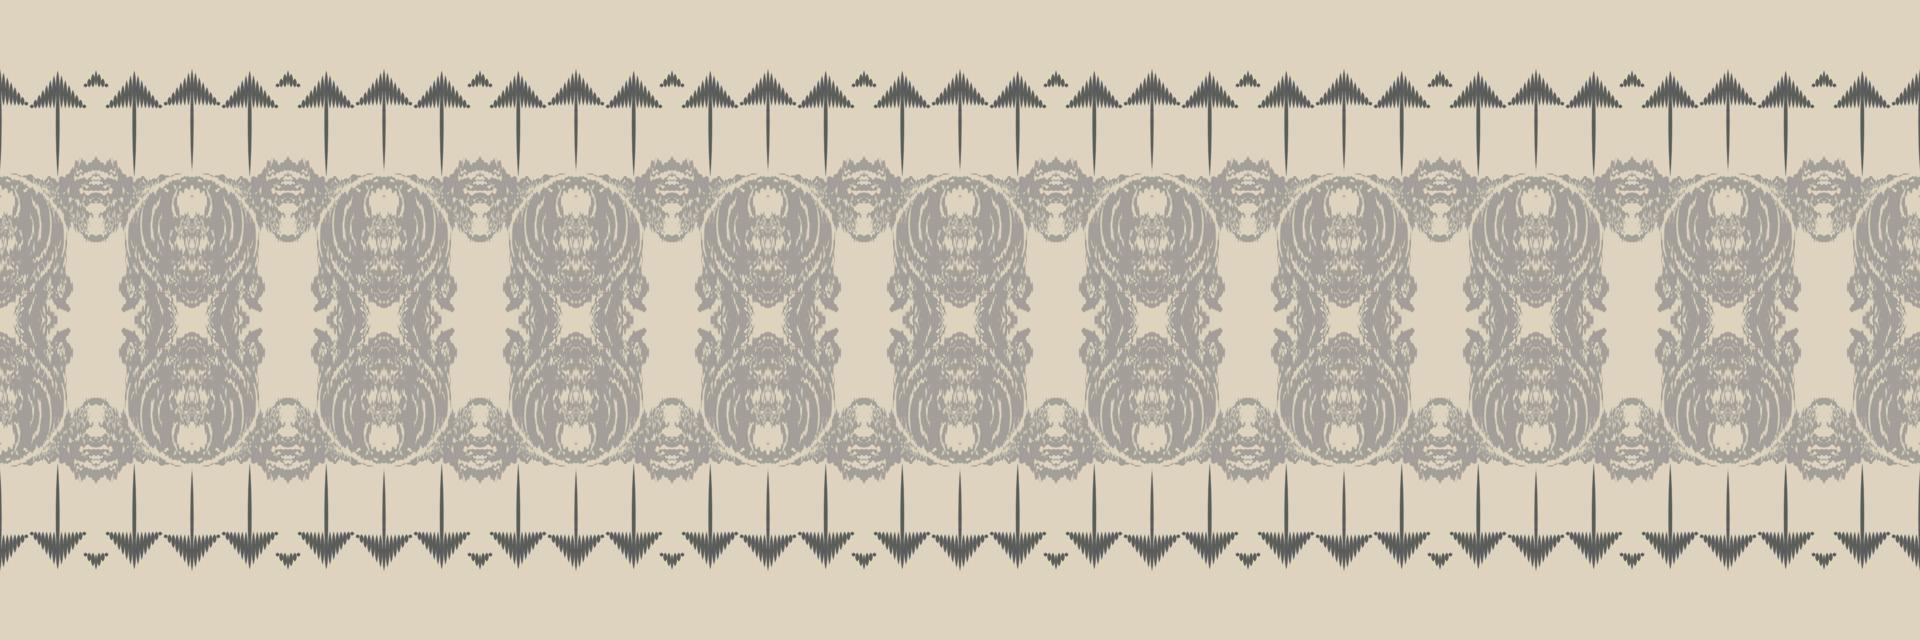 ikat mönster stam- afrika sömlös mönster. etnisk geometrisk ikkat batik digital vektor textil- design för grafik tyg saree mughal borsta symbol strängar textur kurti kurtis kurtas